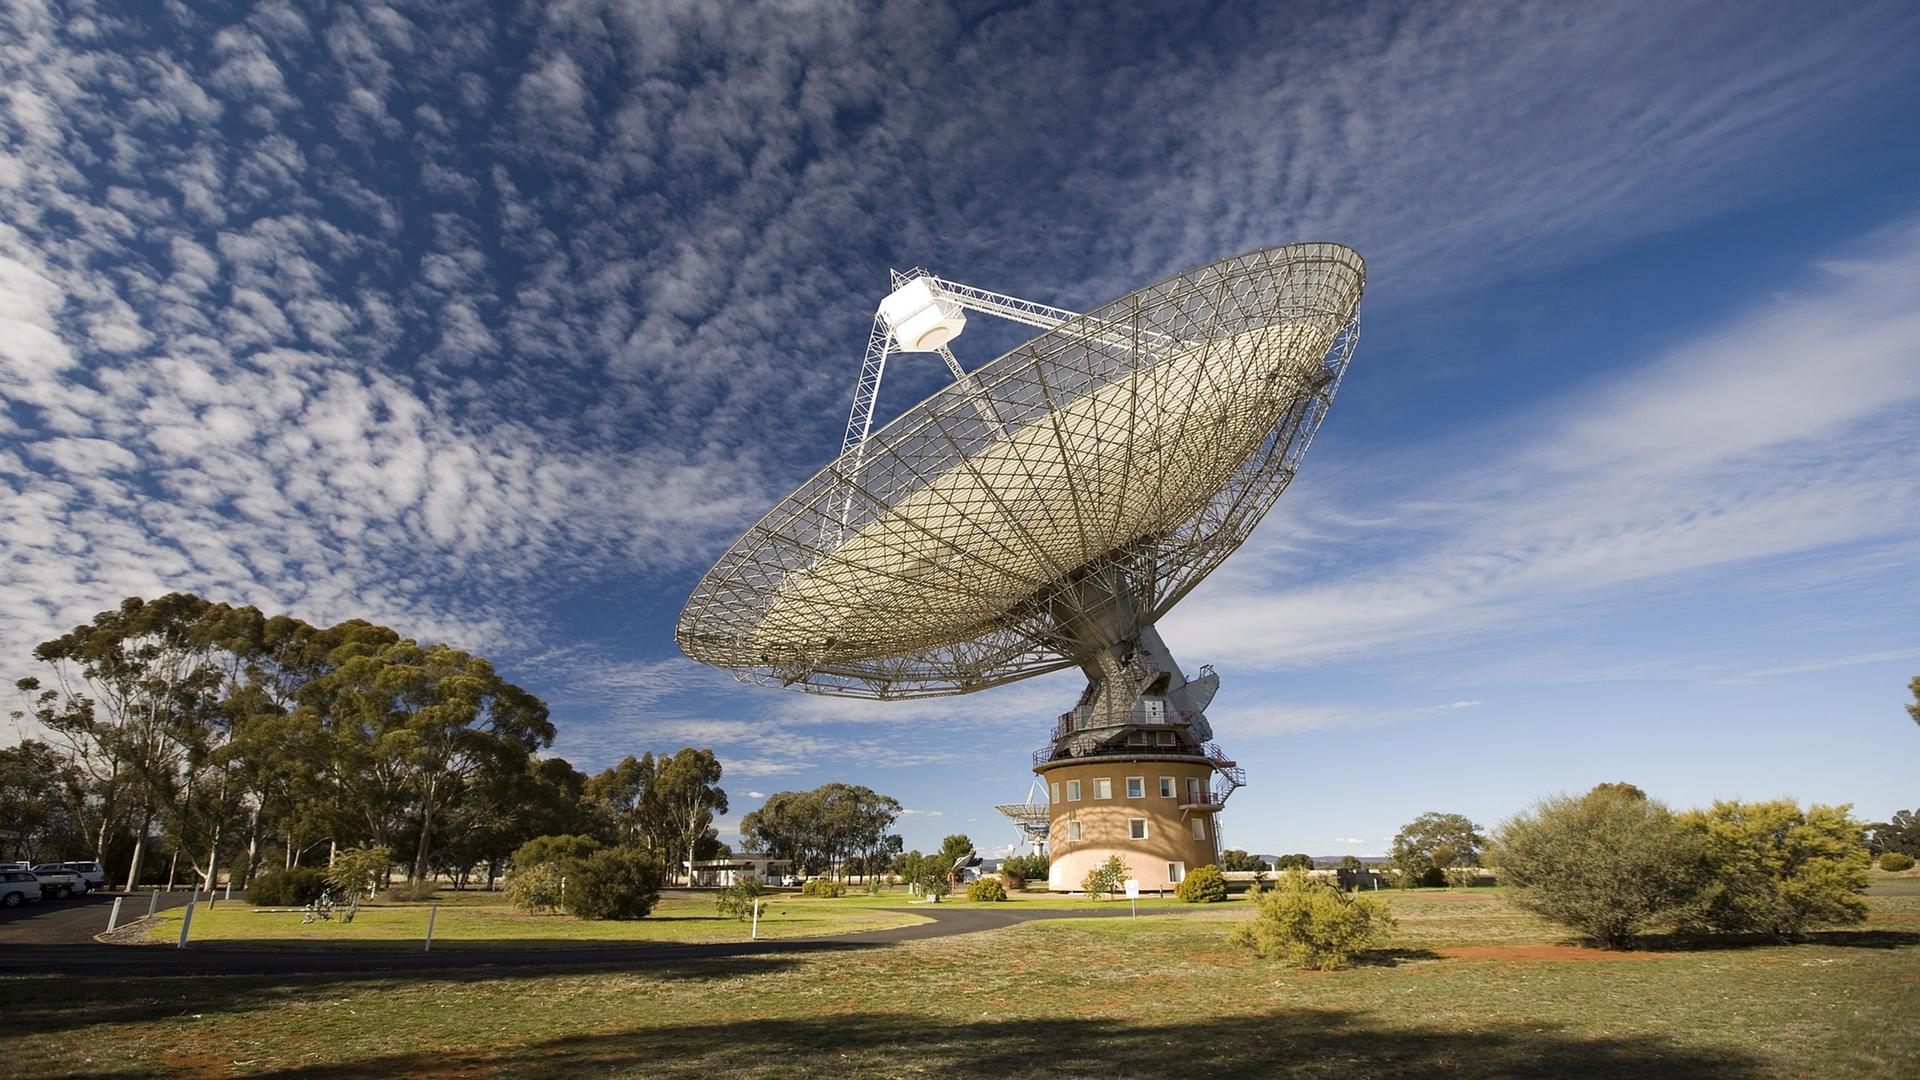 Panorama-Blick auf ein Radioteleskop, das beeindruckend groß in einer Wiesenlandschaft steht.